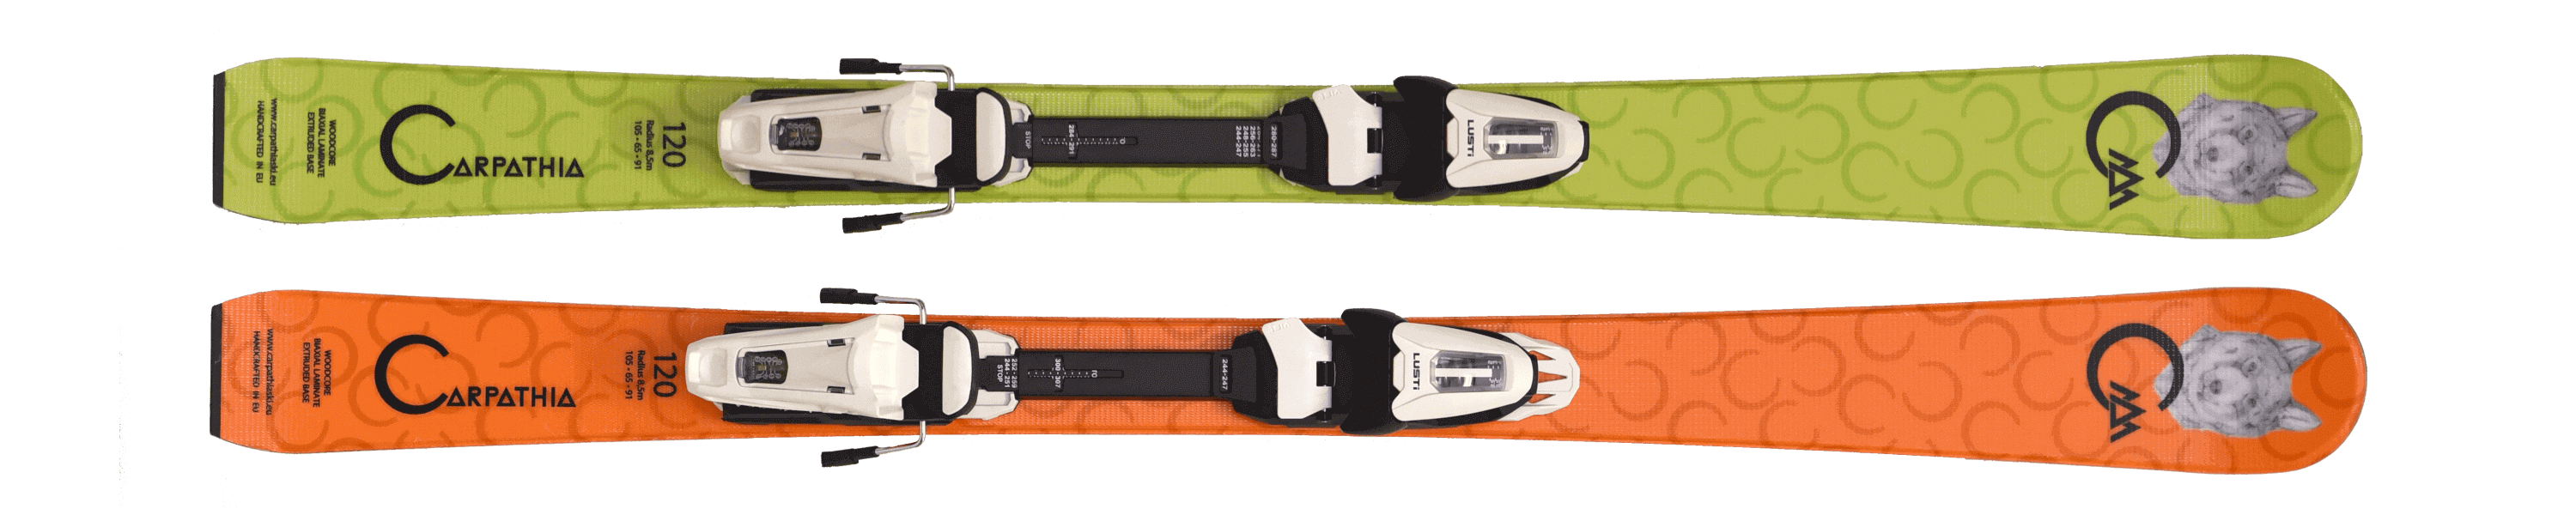 Oranžové a zelené lyže Carpathia Junior Lupus s vázáním